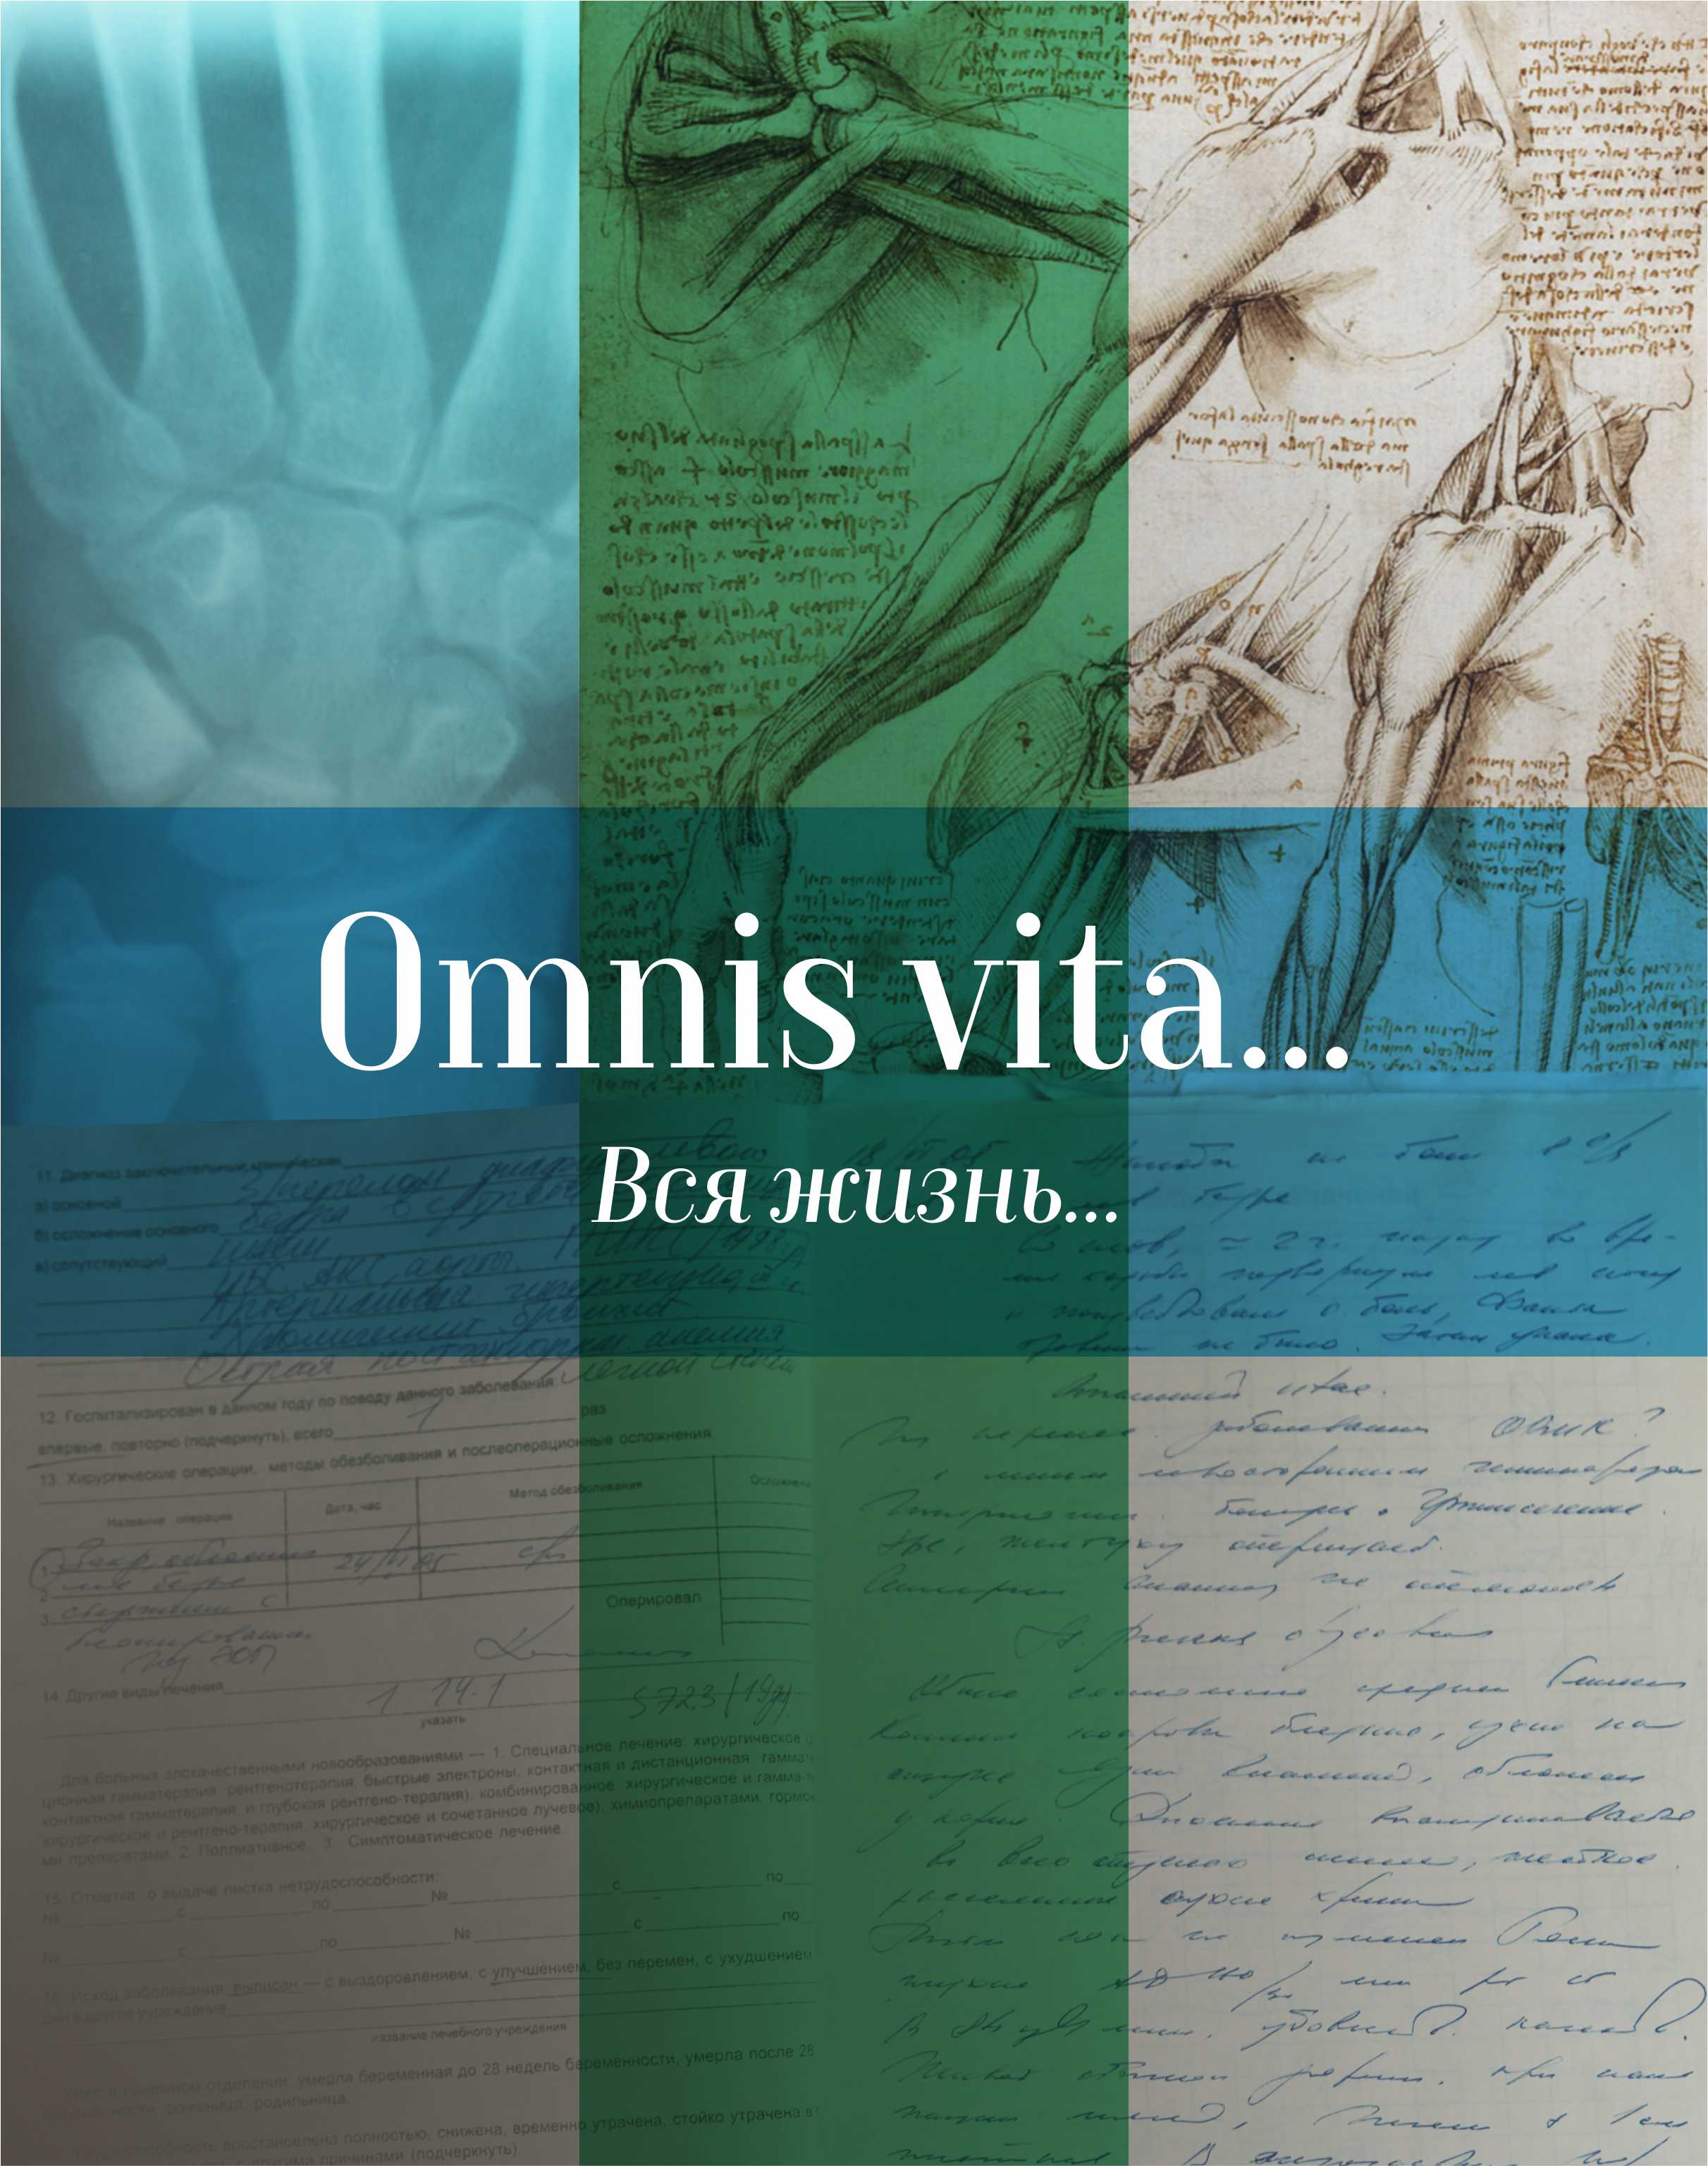 Omnis vita… Вся жизнь… История здравоохранения в Осинском районе